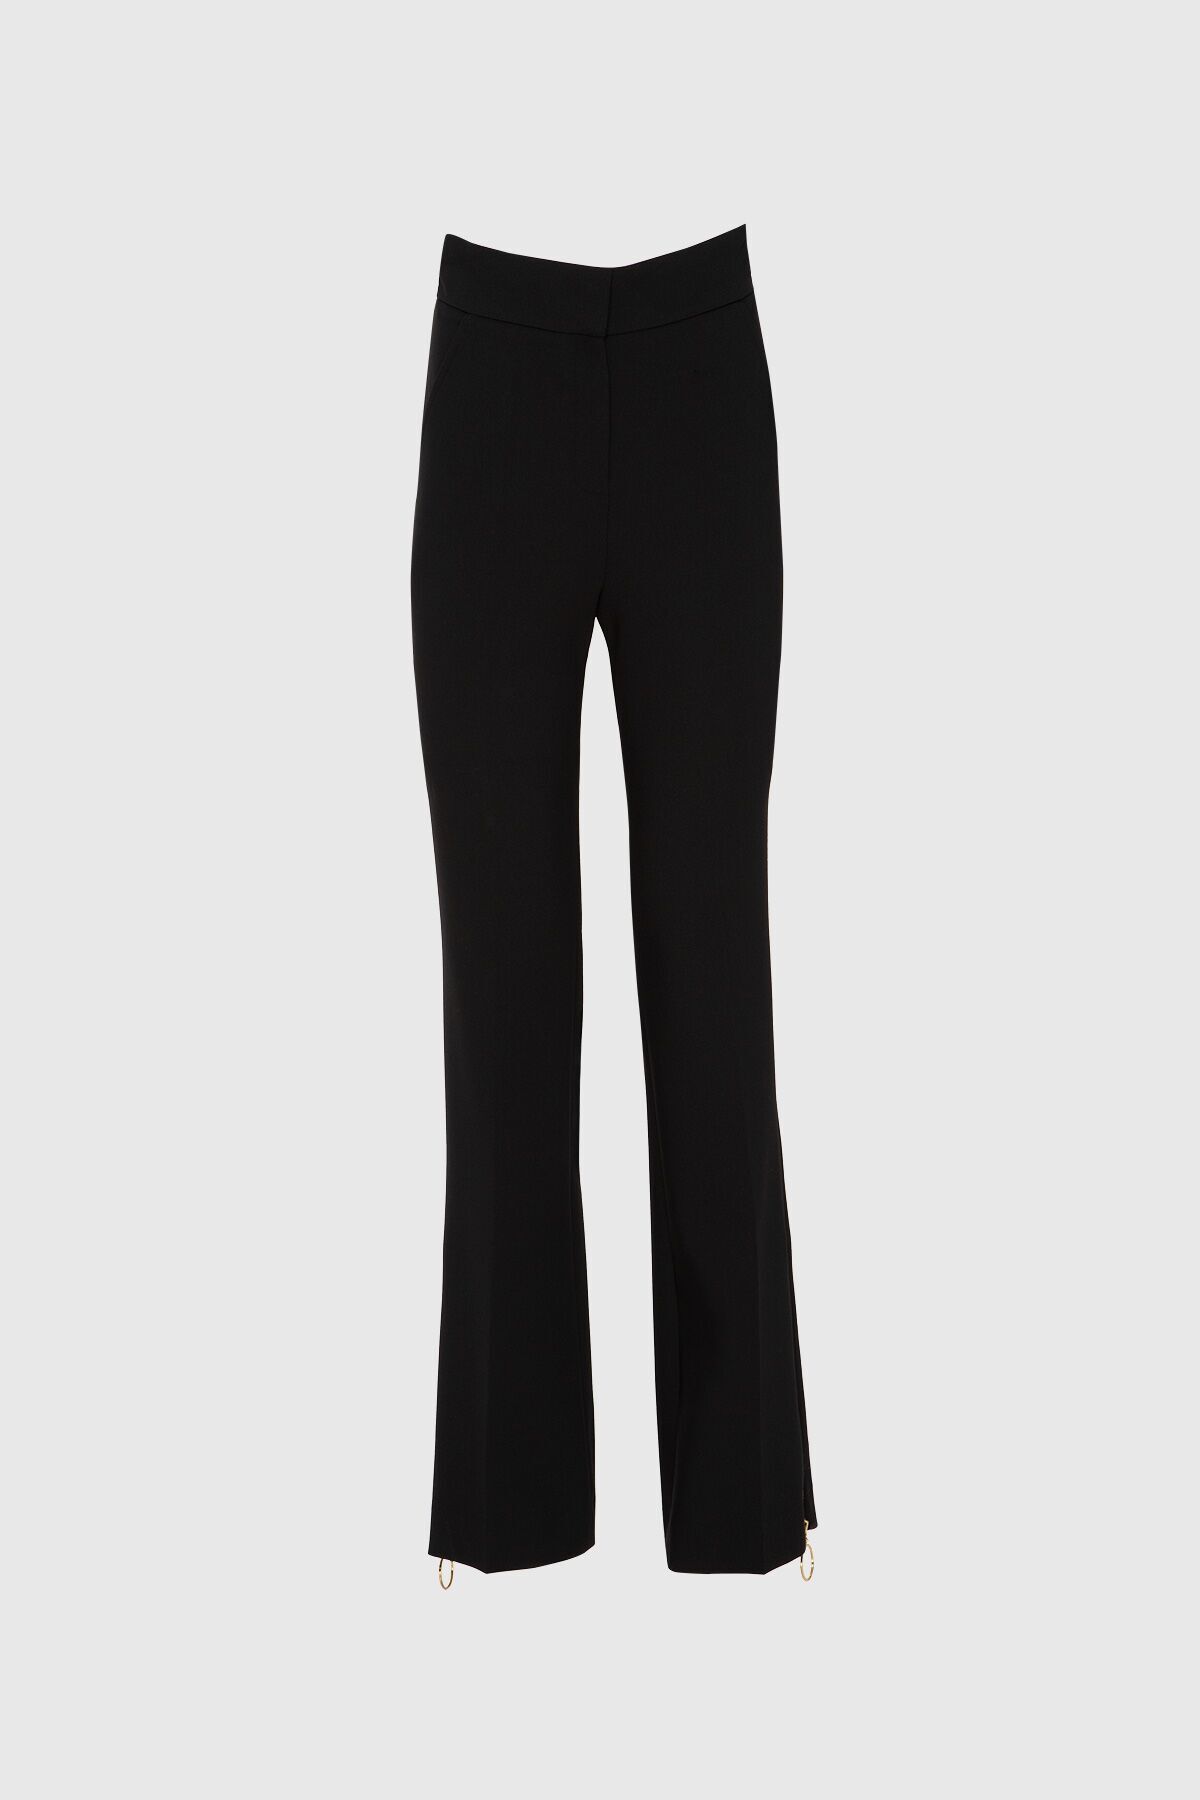 GIZIA Paçası Fermuar Detaylı Yüksek Bel Siyah Pantolon